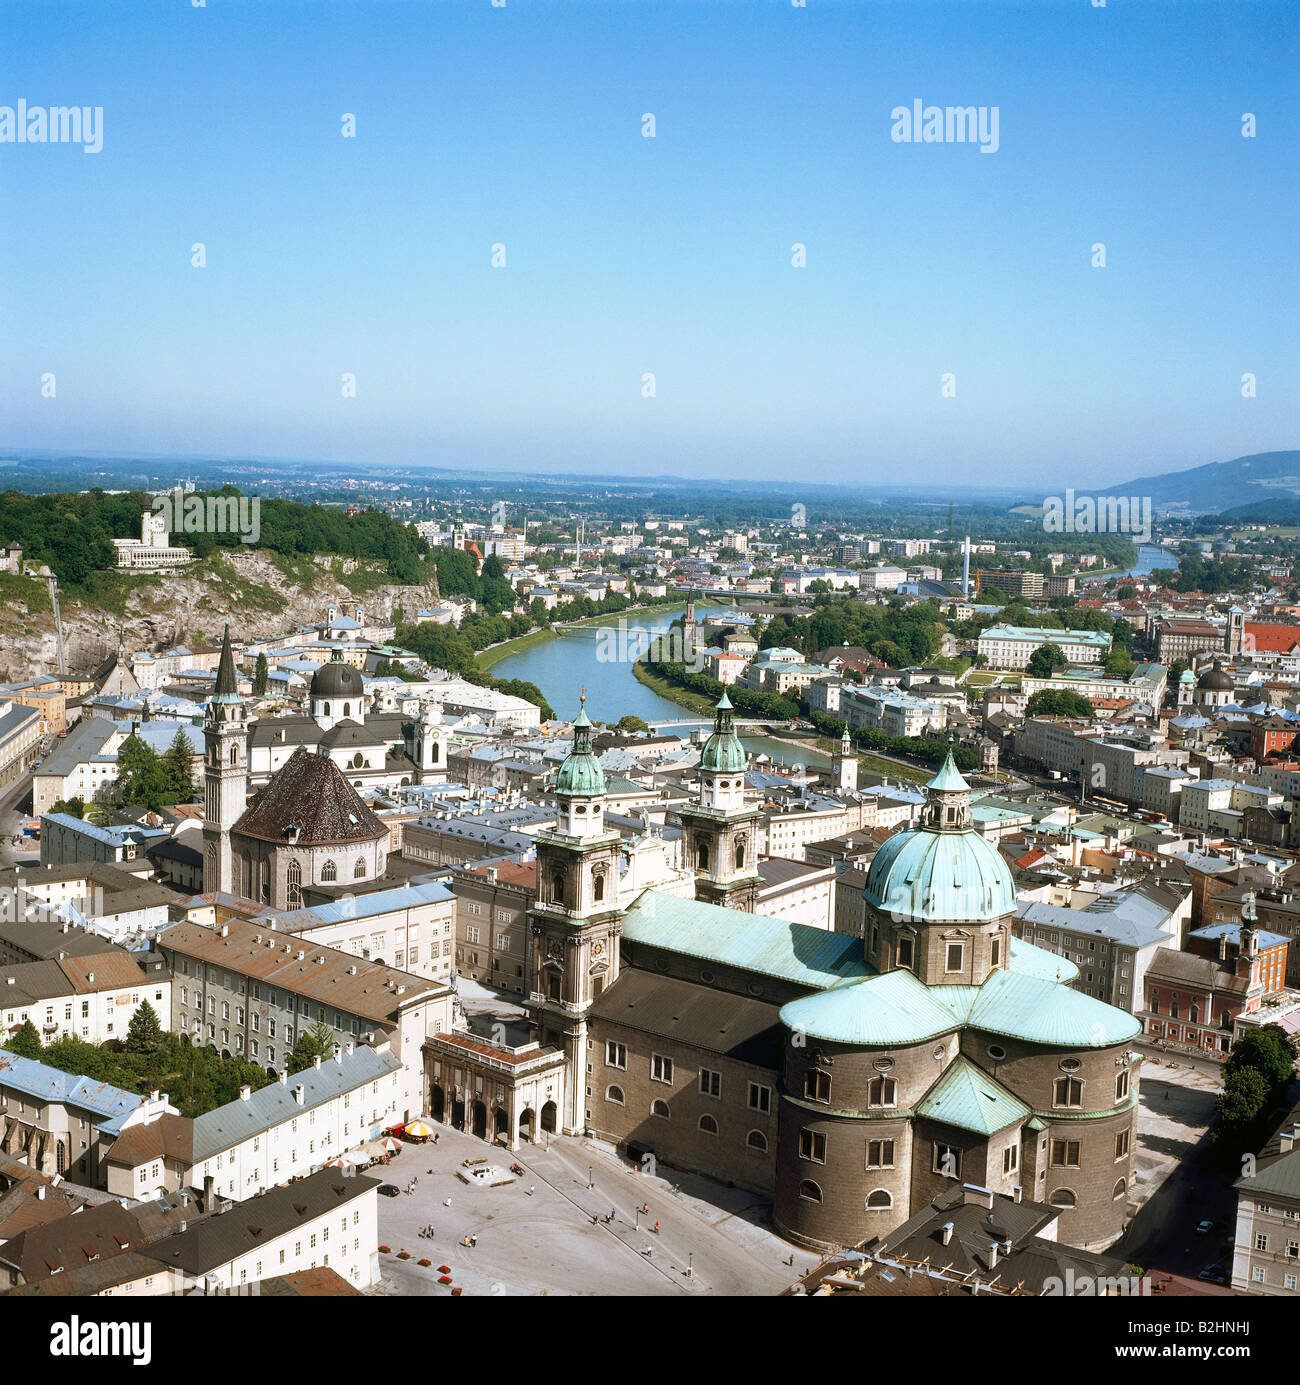 Géographie / voyage, Autriche, campagne de Salzbourg, vue de la ville de Hohensalzburg avec église, cathédrale et Salzach, château, vue sur la ville, paysage urbain, vue, site du patrimoine culturel mondial de l'UNESCO / sites, Banque D'Images